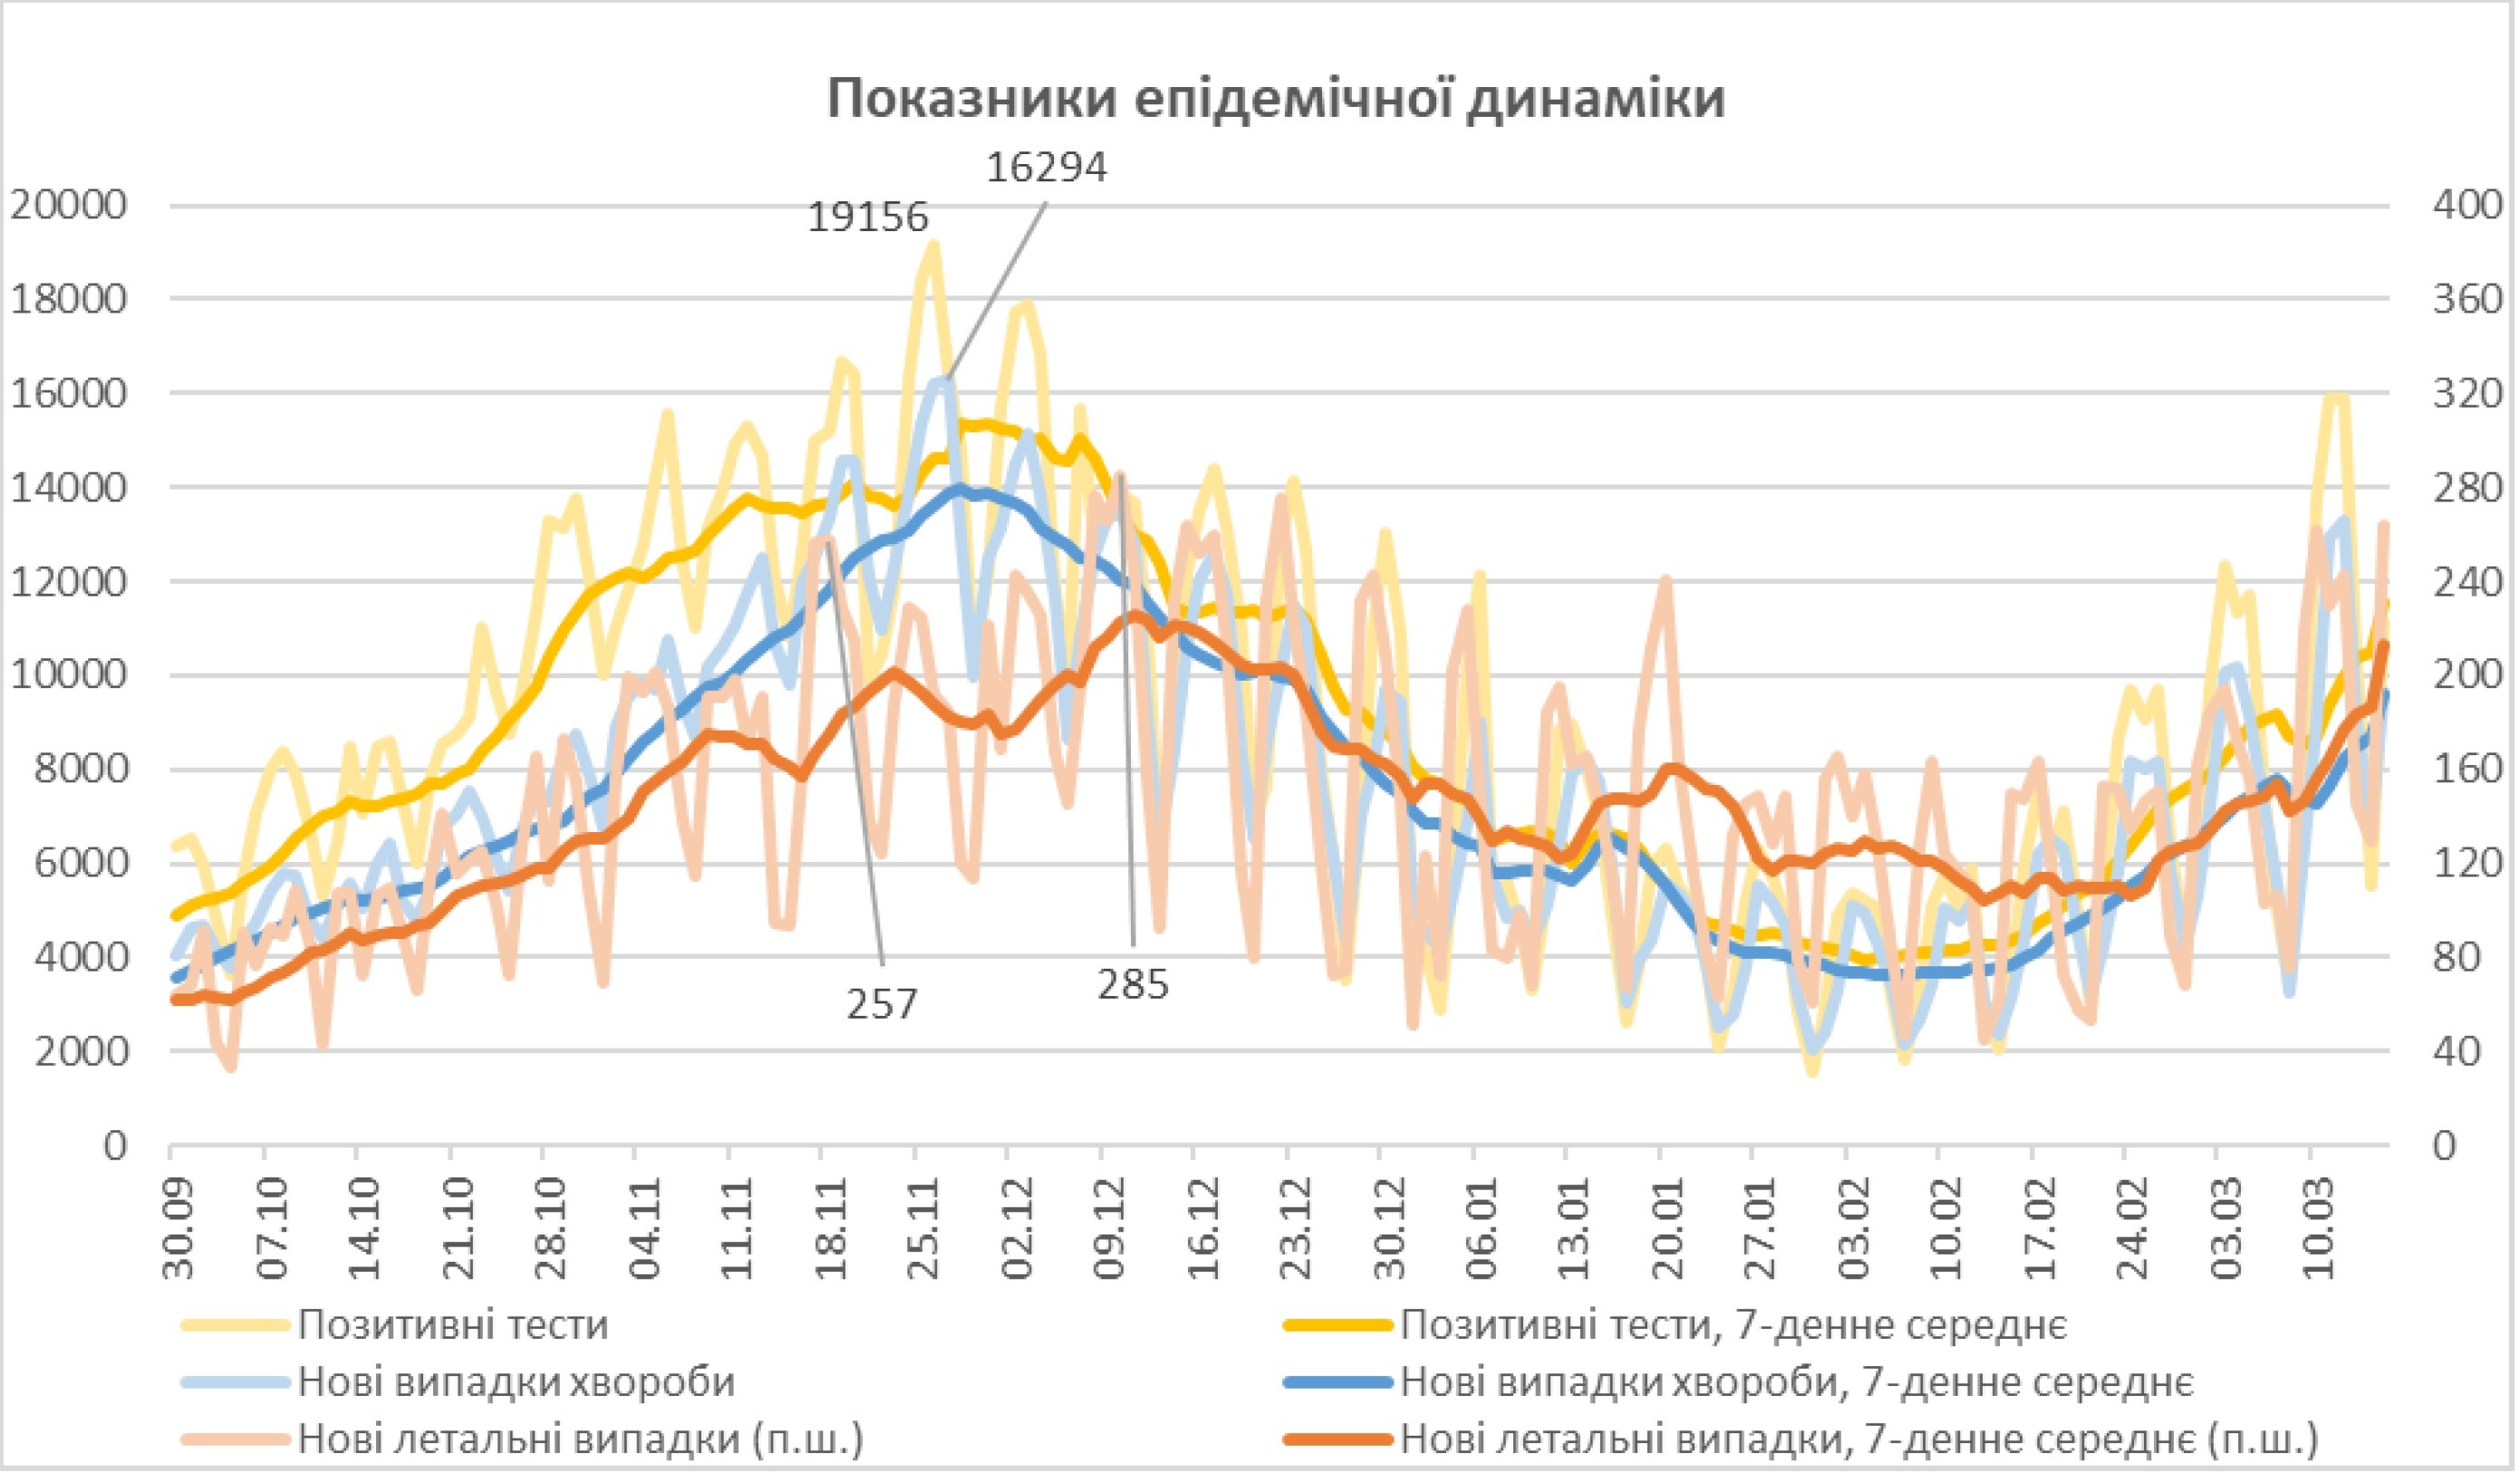 Летальность от коронавируса в Украине продолжит расти до апреля - НАН. Скриншот